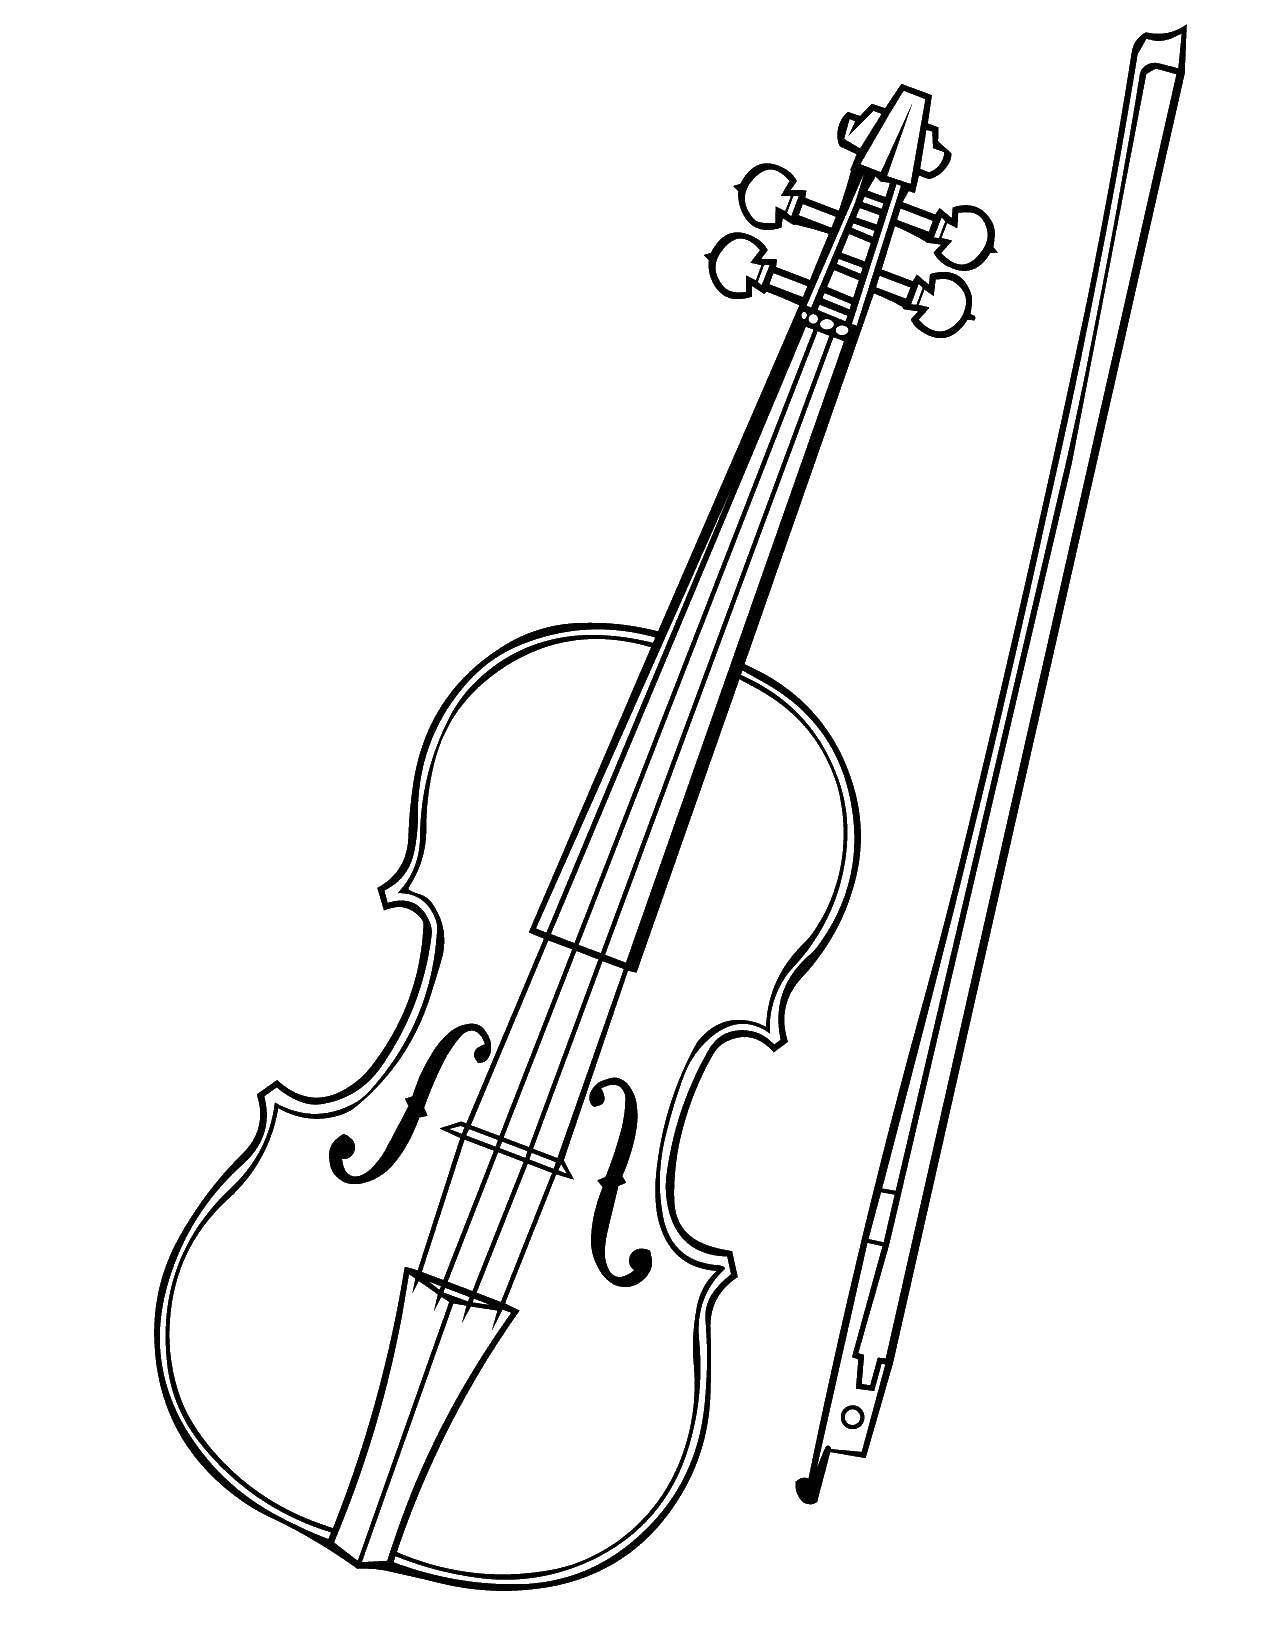 Coloring Viola. Category Violin. Tags:  viola.